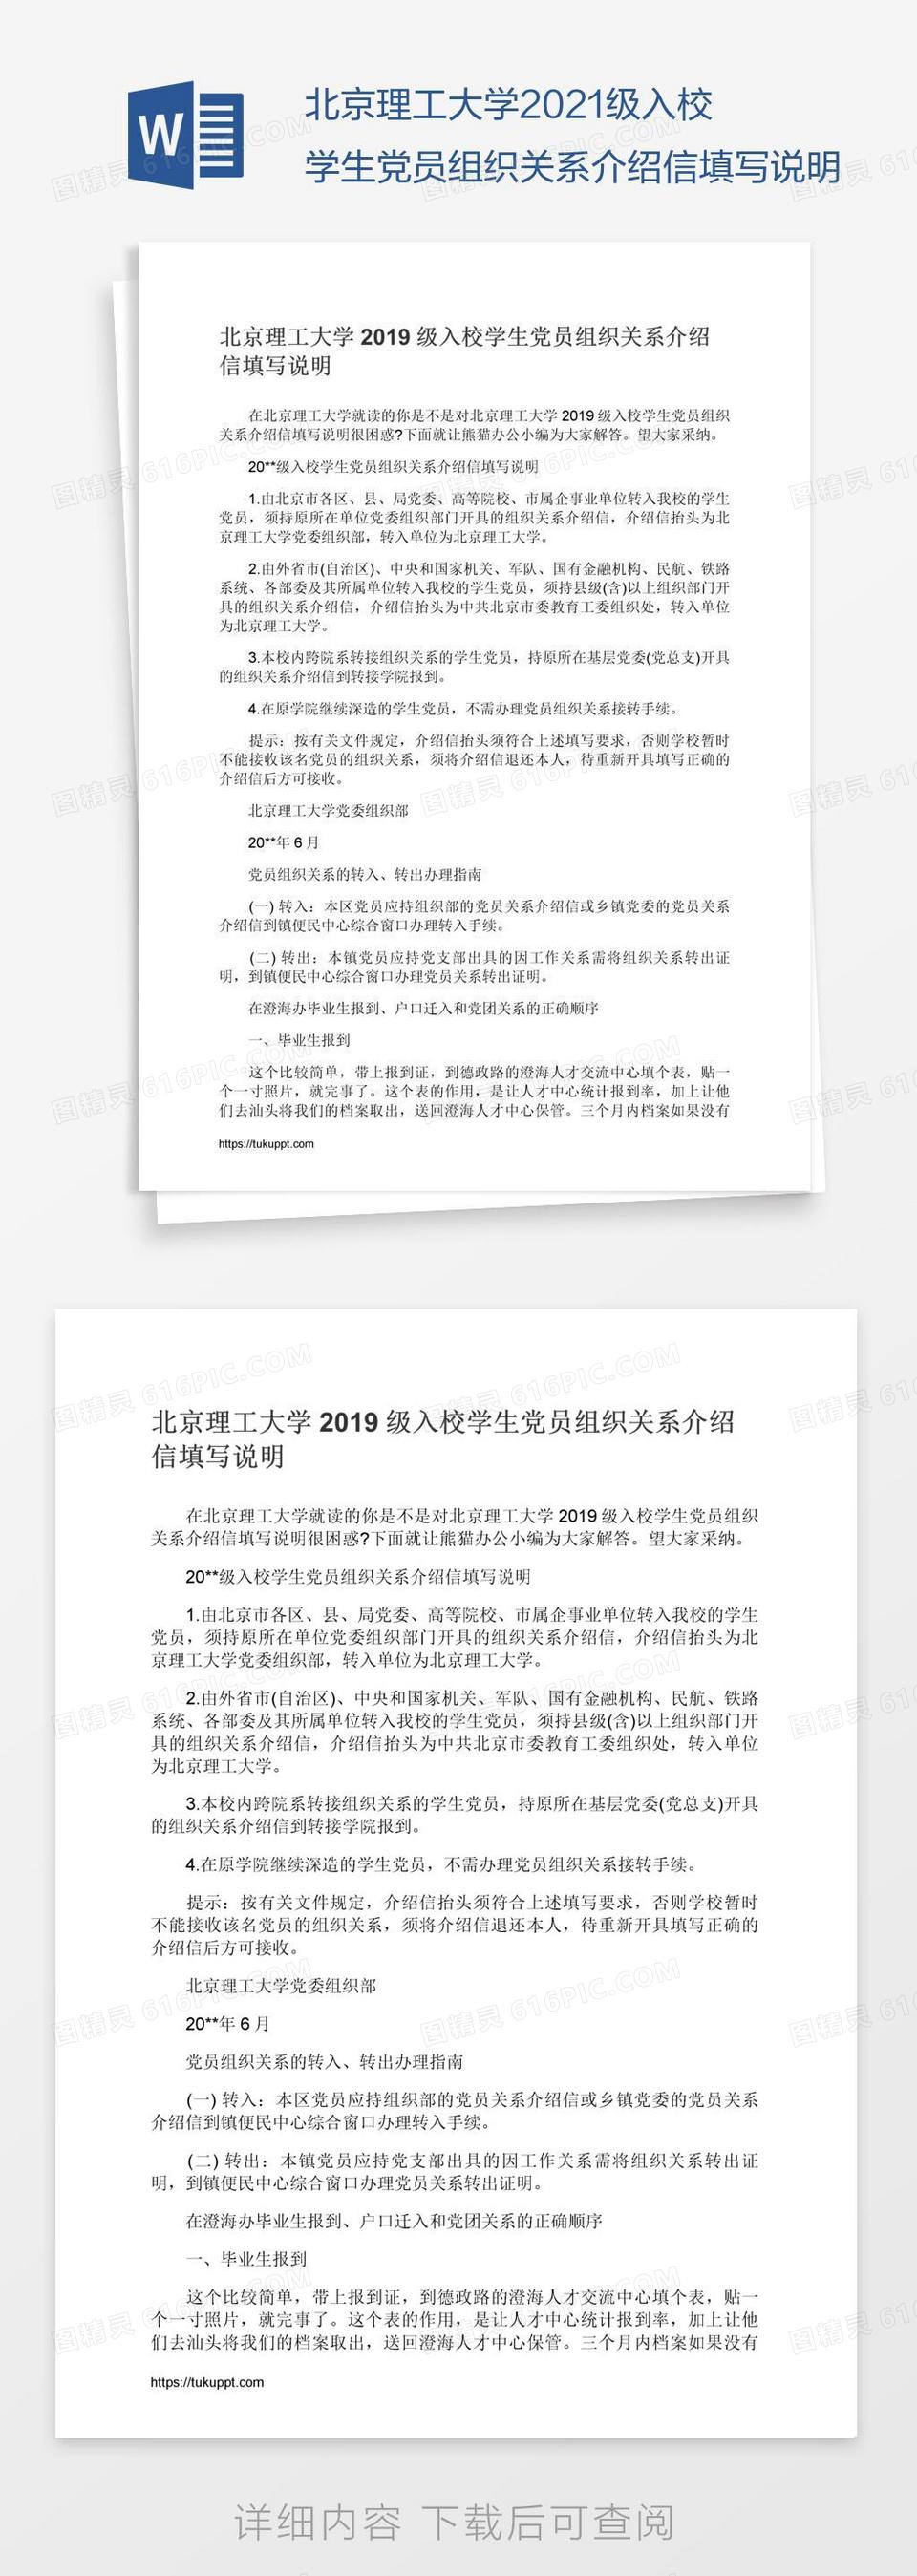 北京理工大学2021级入校学生党员组织关系介绍信填写说明